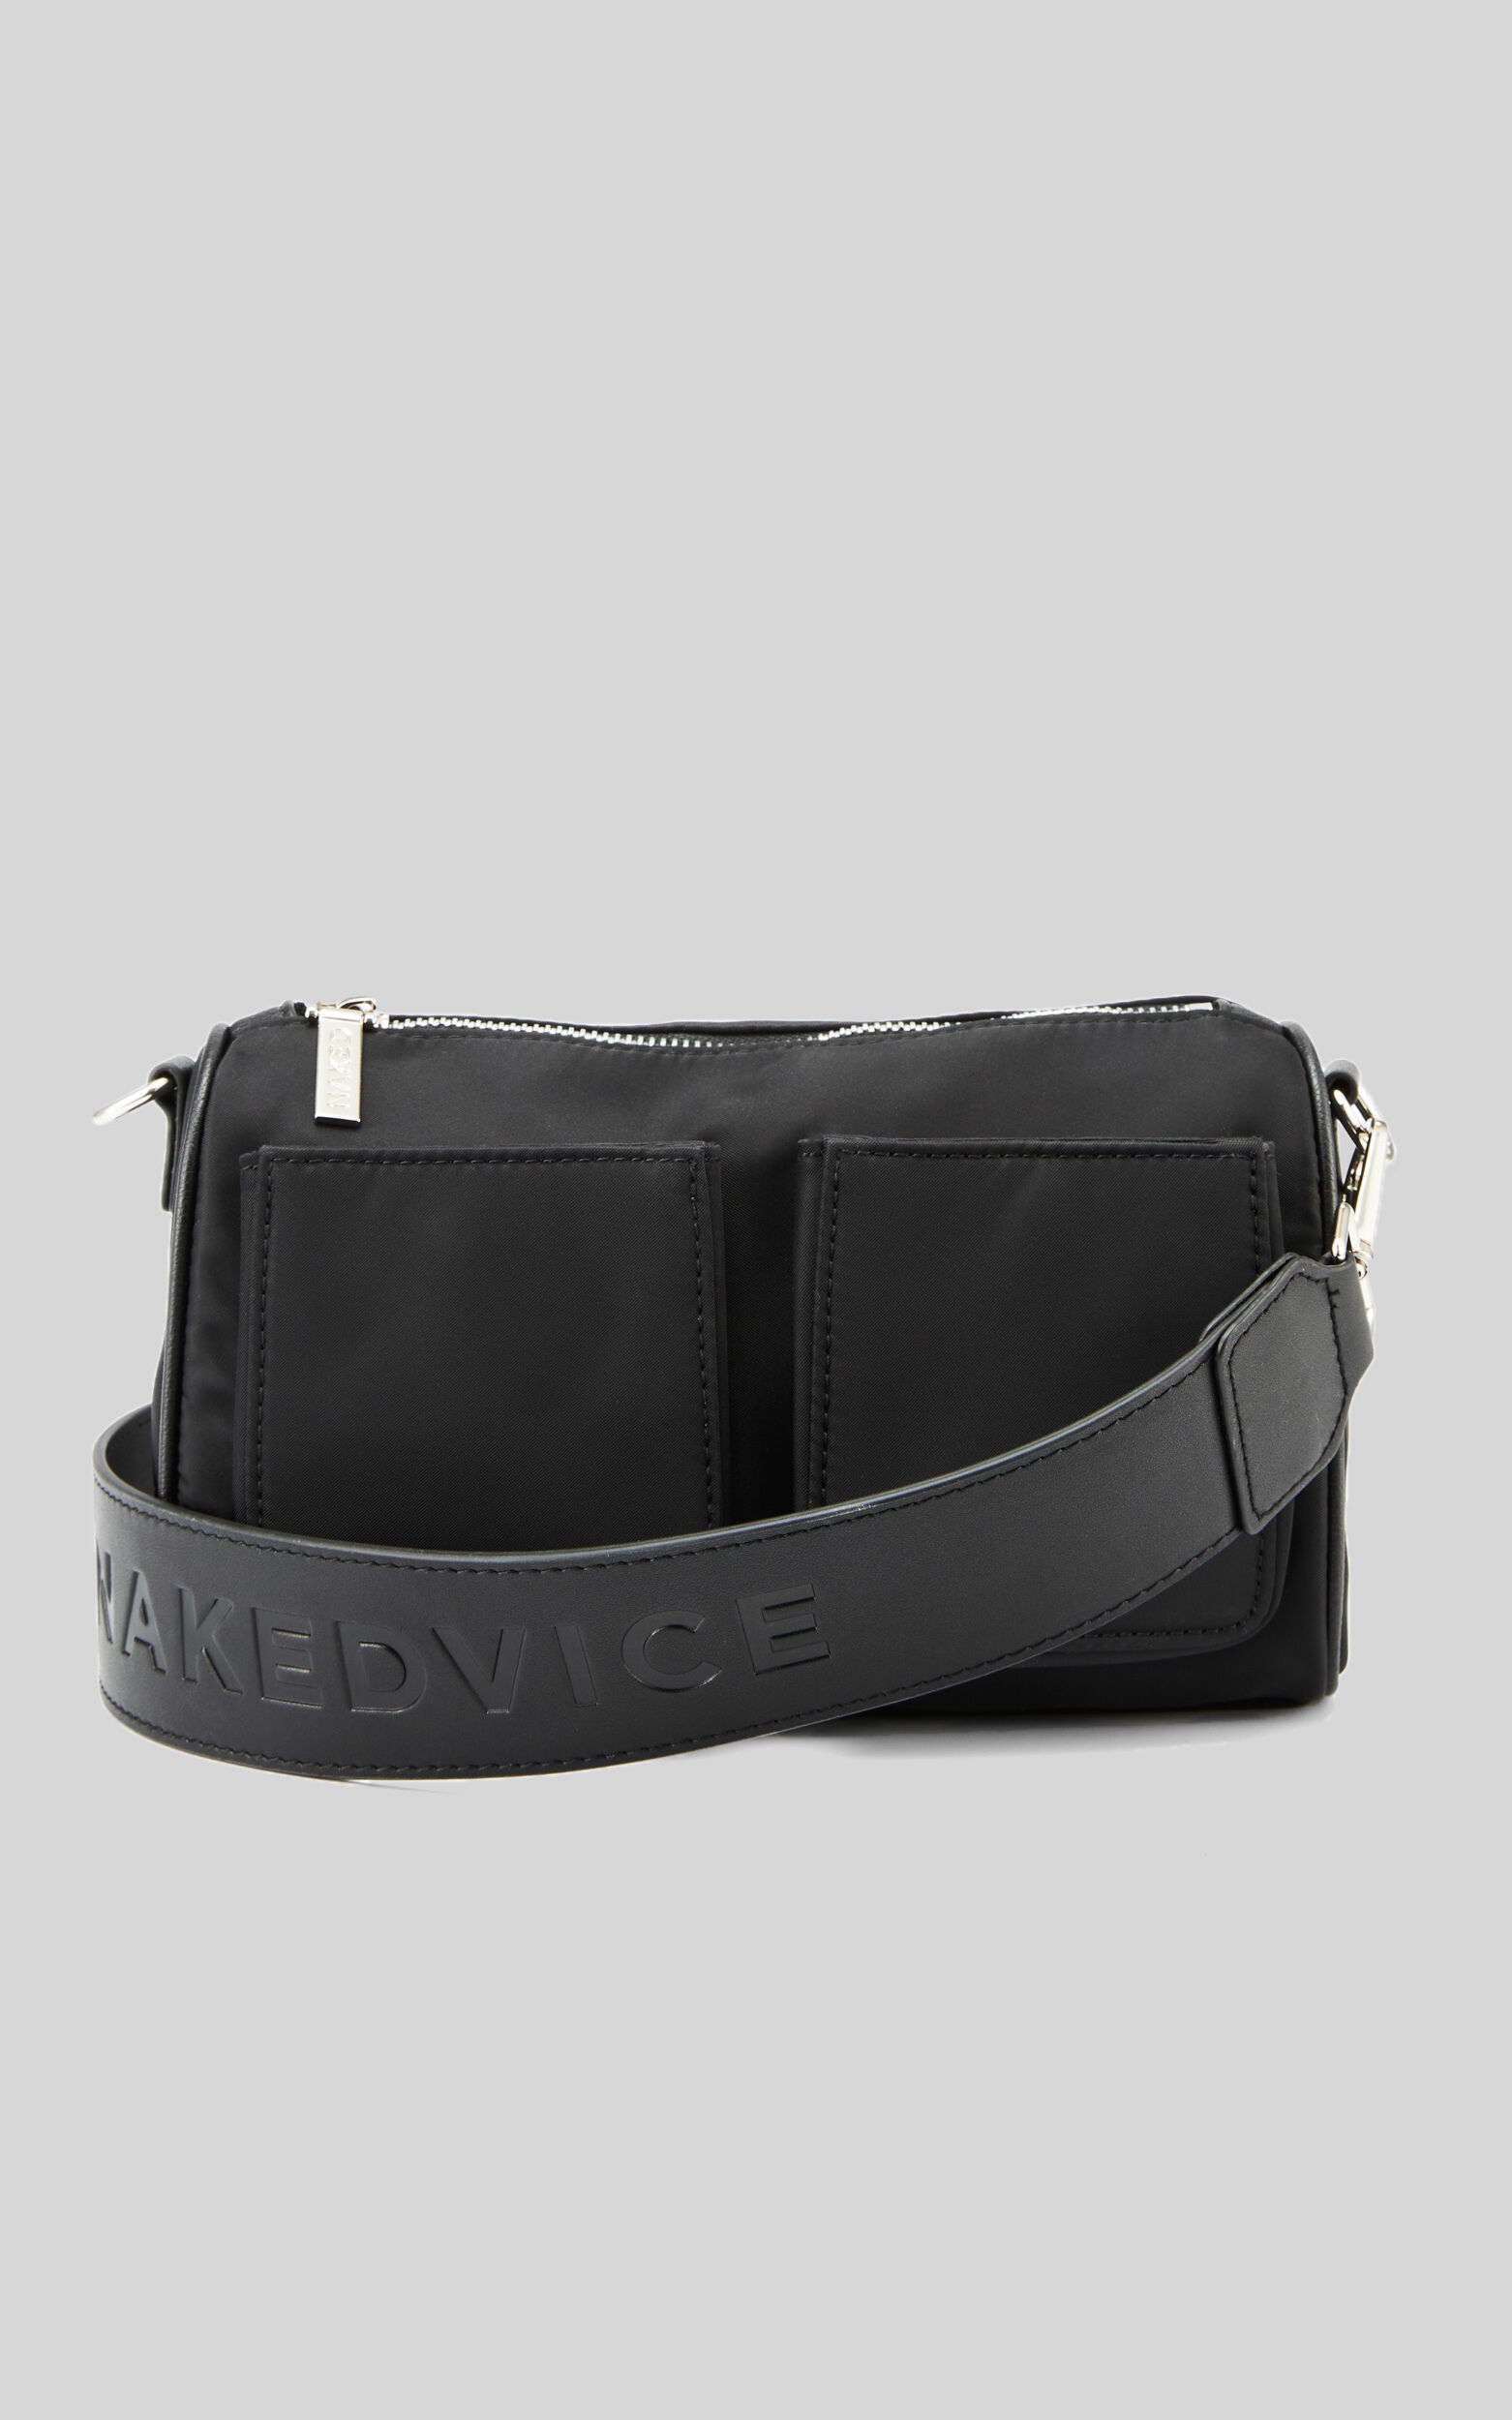 NAKEDVICE - THE AMELIE BAG in Black/Silver - NoSize, BLK1, super-hi-res image number null